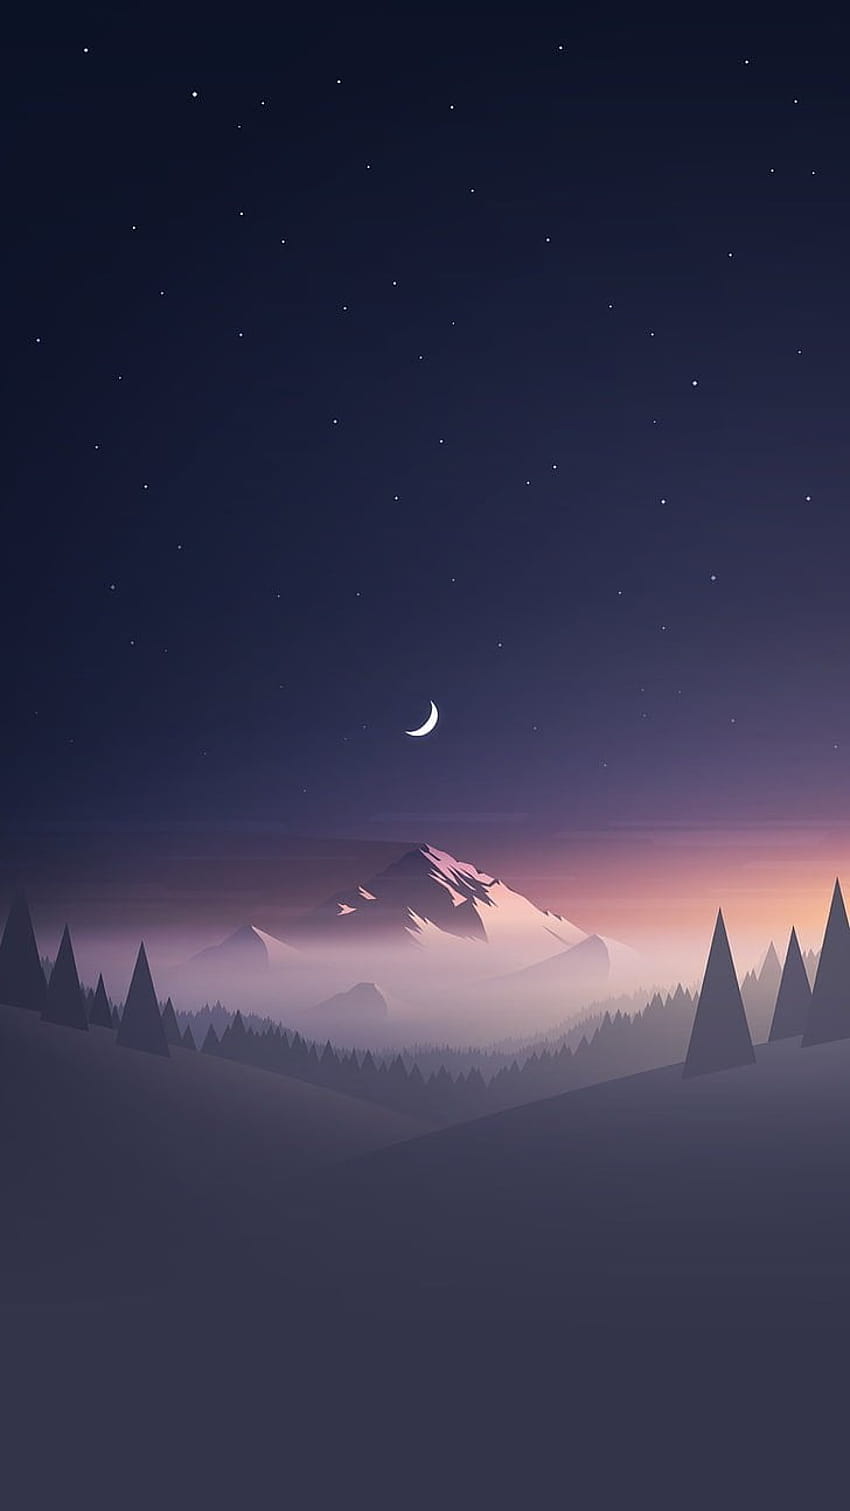 Cielo despejado arte digital noche estrellada Luna naturaleza bosque: Actualización, mejores s de iPhone y iPhone, teléfono de arte digital fondo de pantalla del teléfono